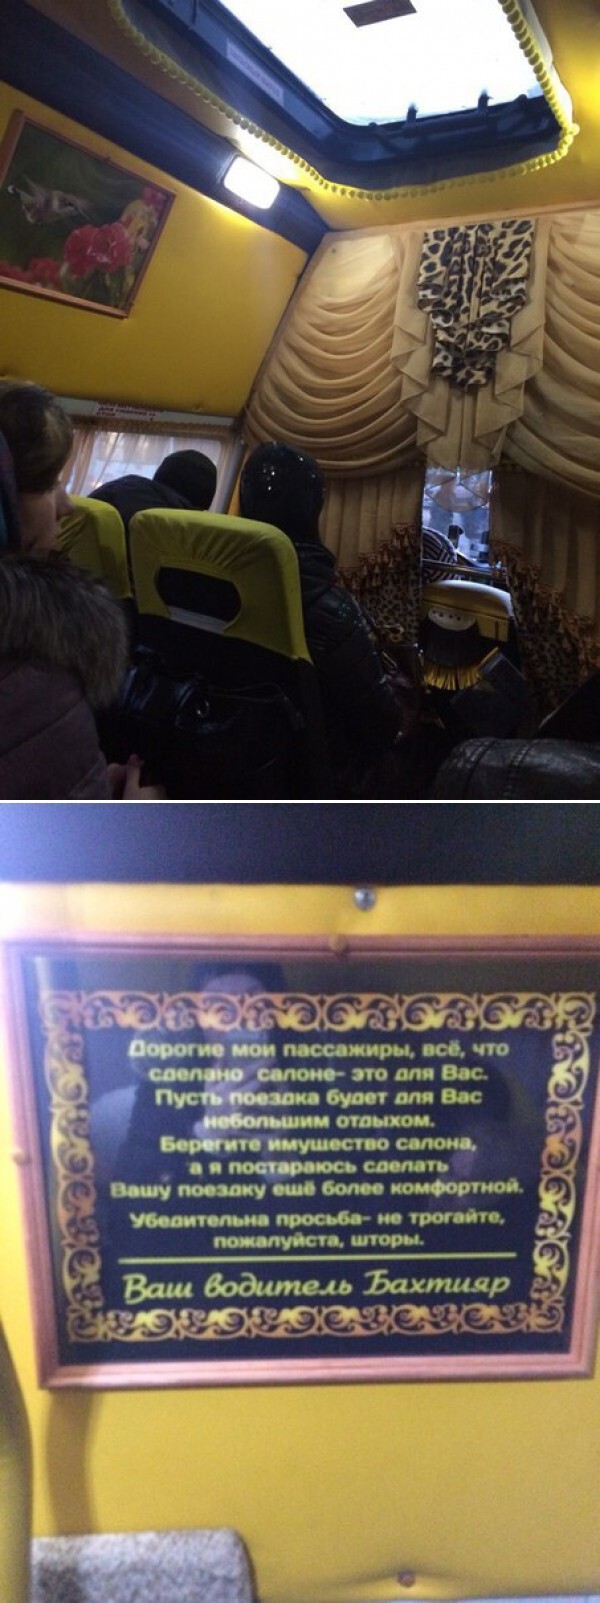 Комфортабельные маршрутки в Омске.